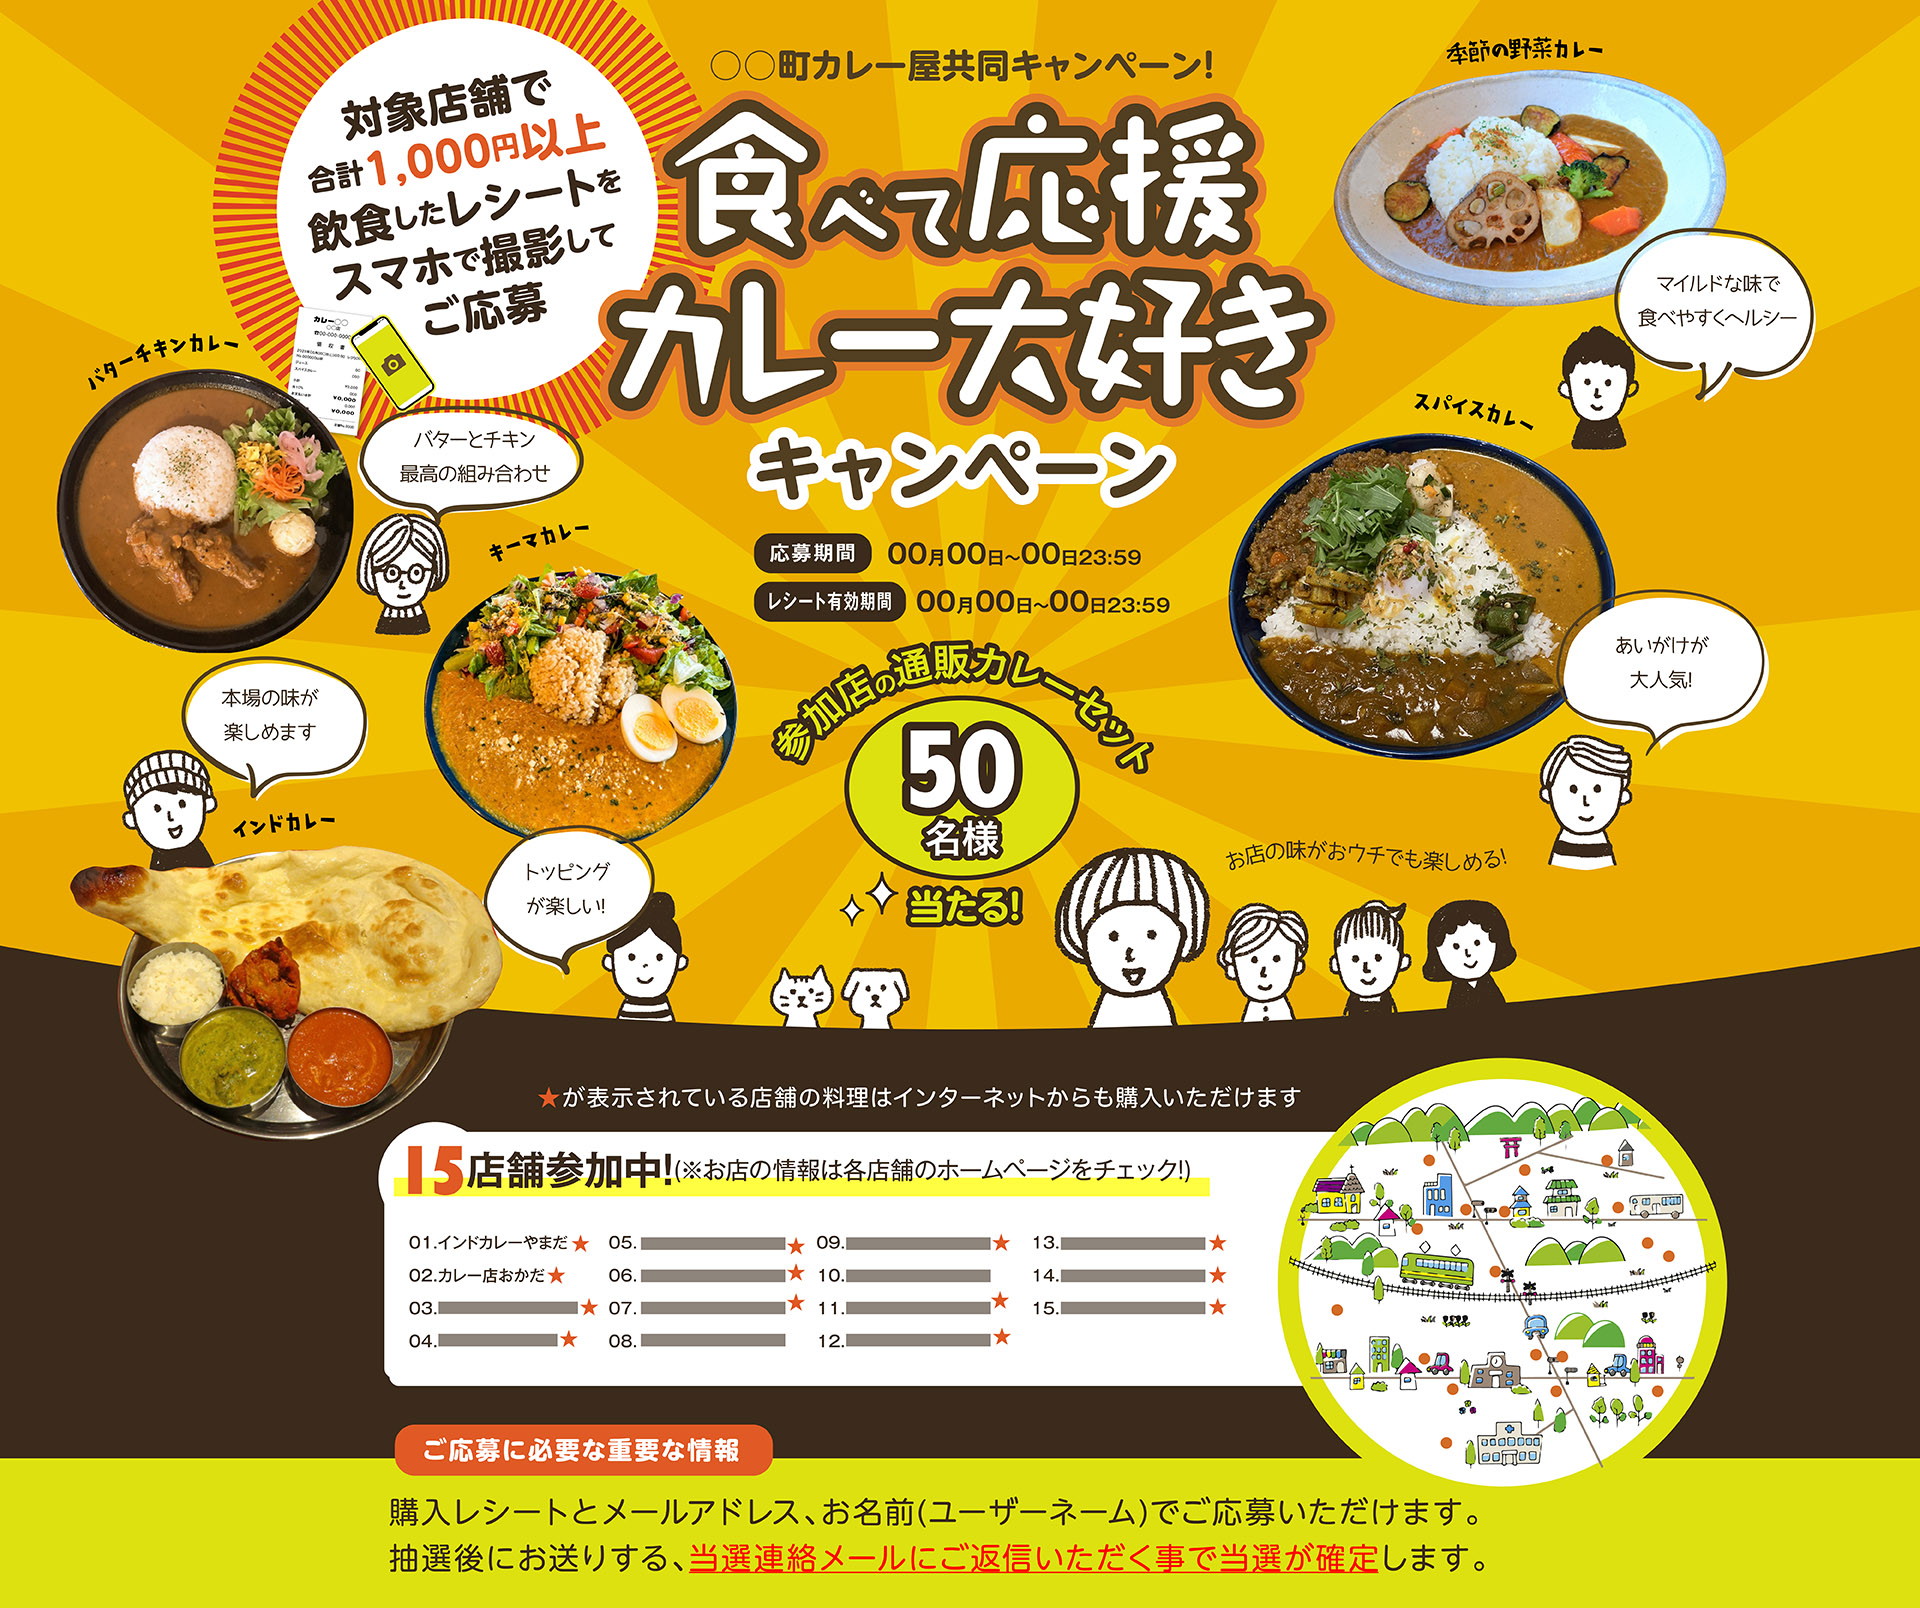 食べて応援カレー大好き(仮)○○町カレー屋共同キャンペーン!